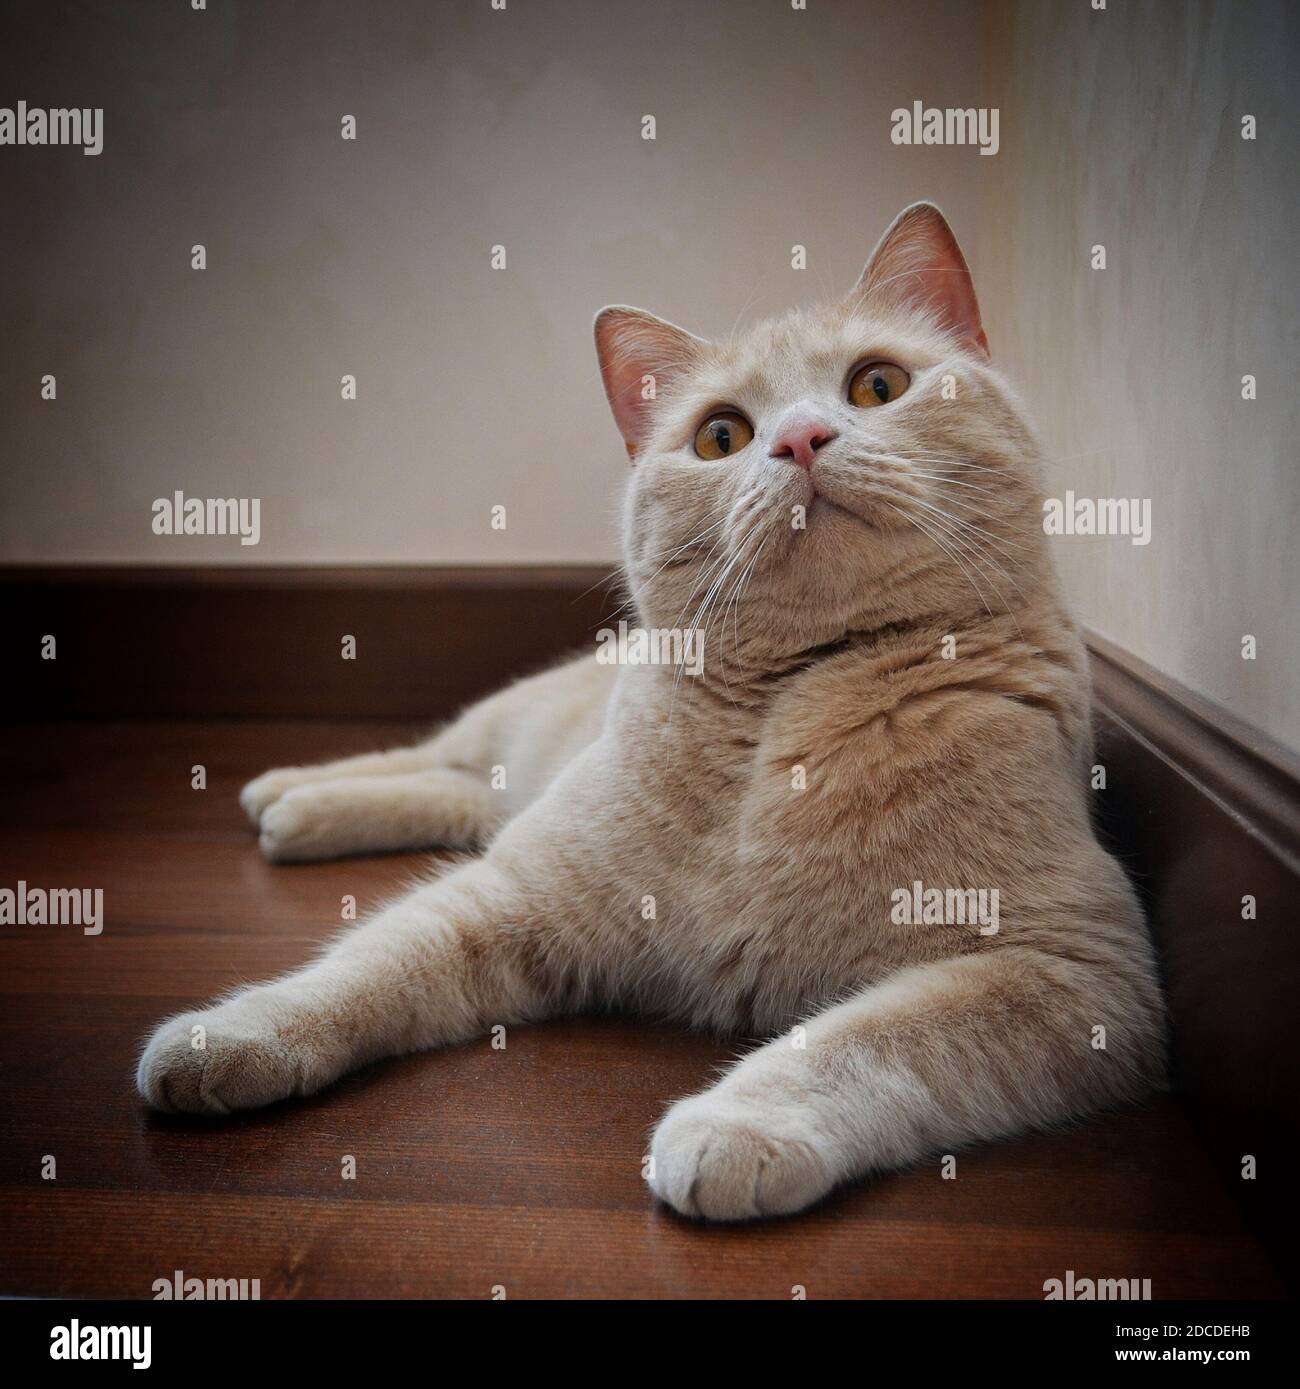 Un chat de couleur pêche aux yeux ambrés se trouve sur le sol Banque D'Images